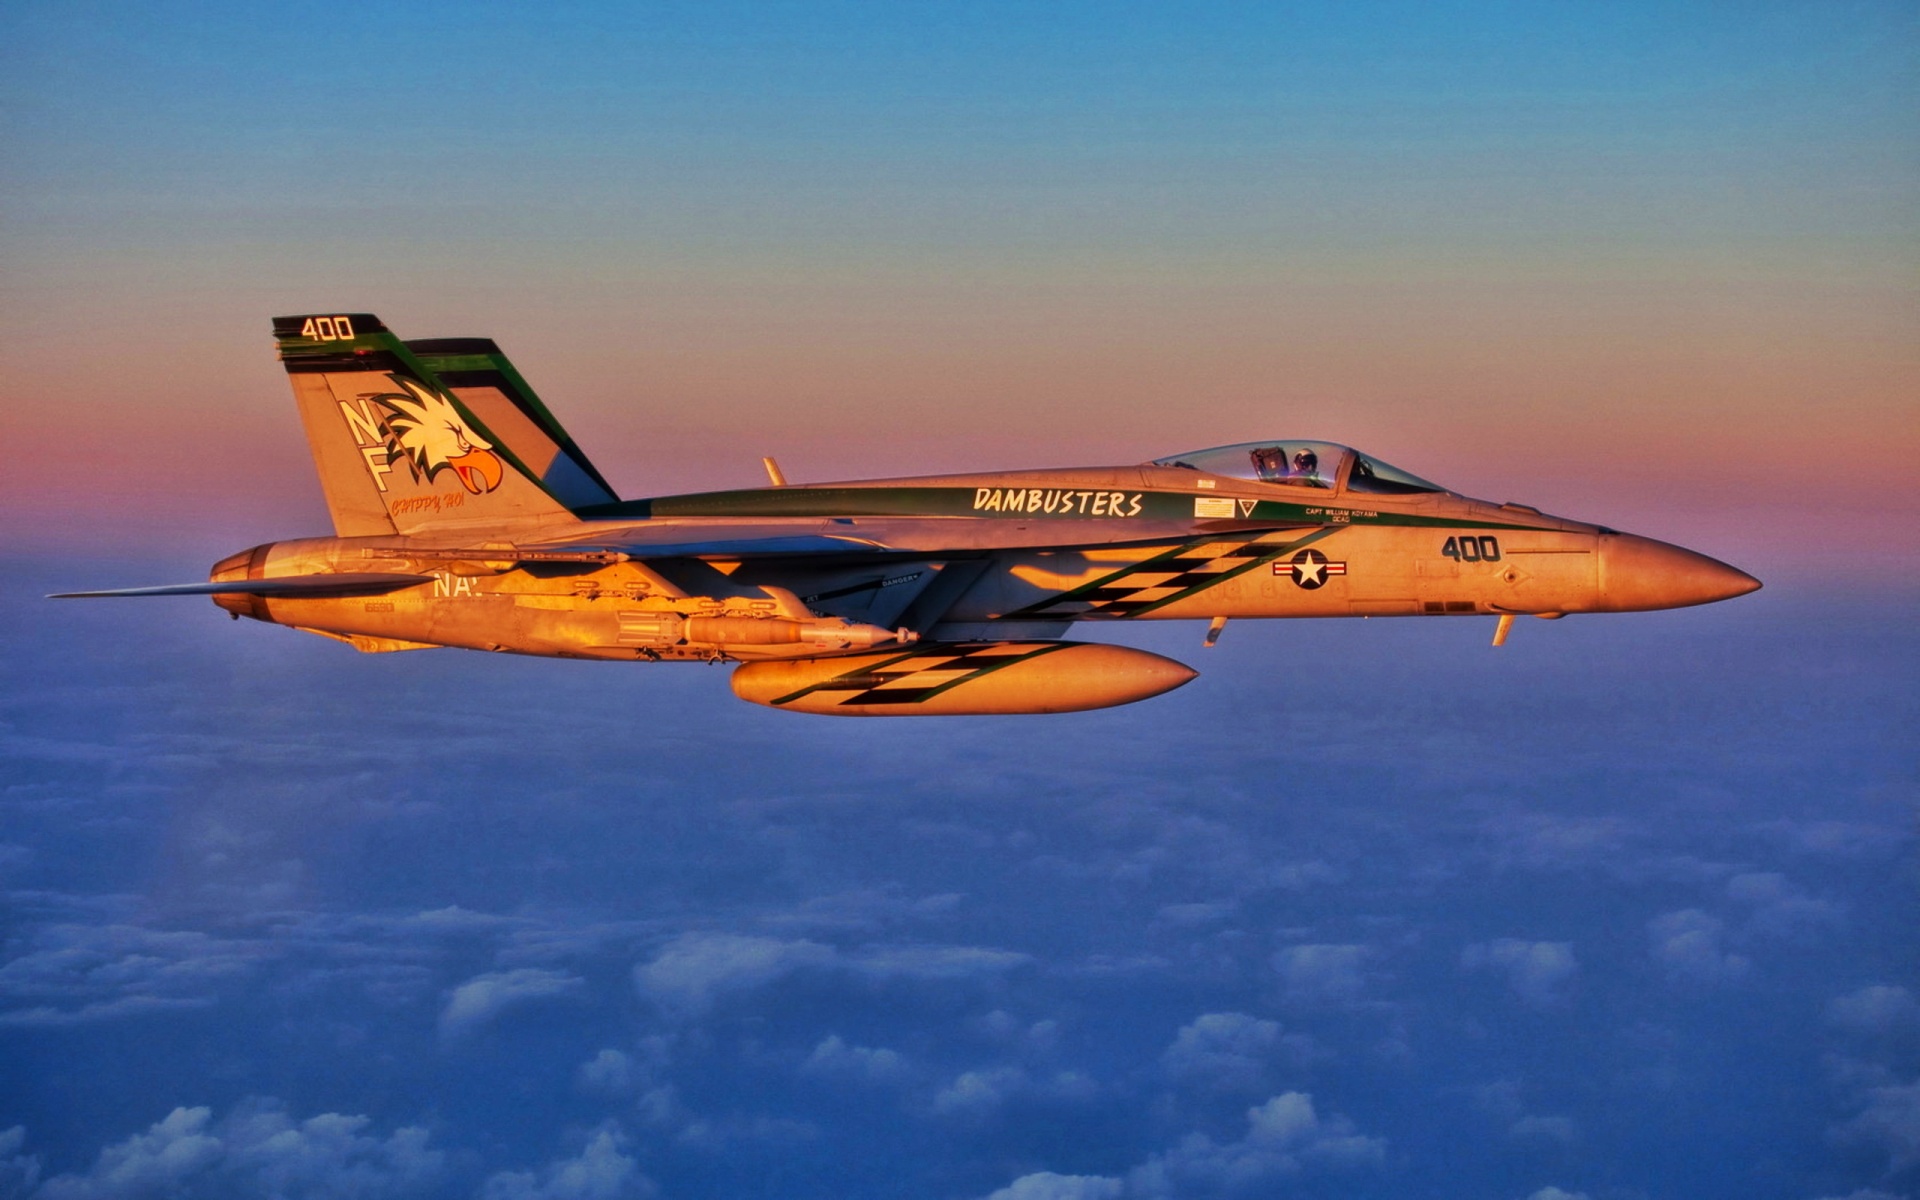 Air Fighter Jet Dambusters Full HD Desktop Wallpapers 1080p